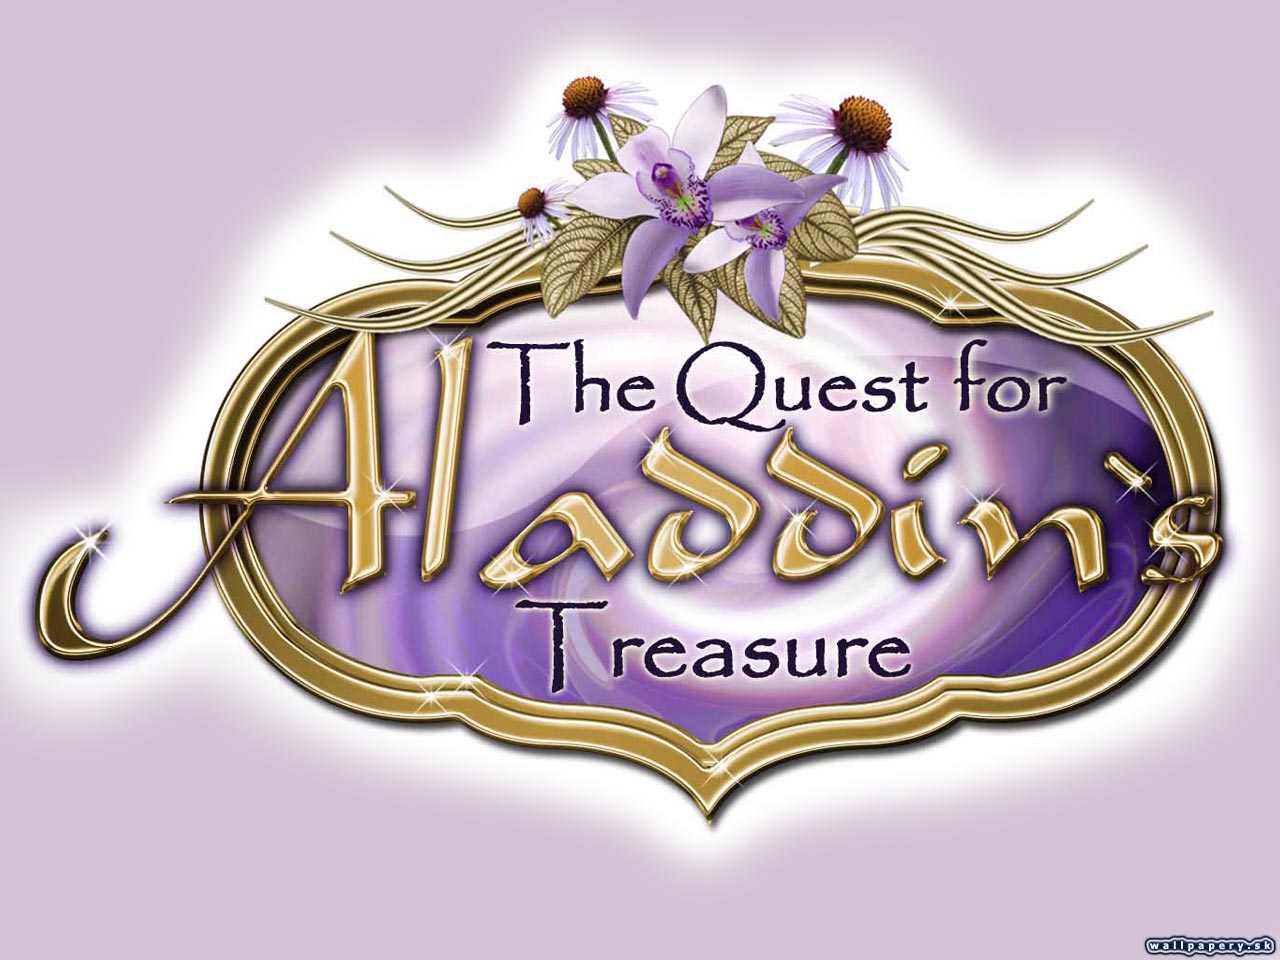 The Quest for Aladdin's Treasure - wallpaper 2